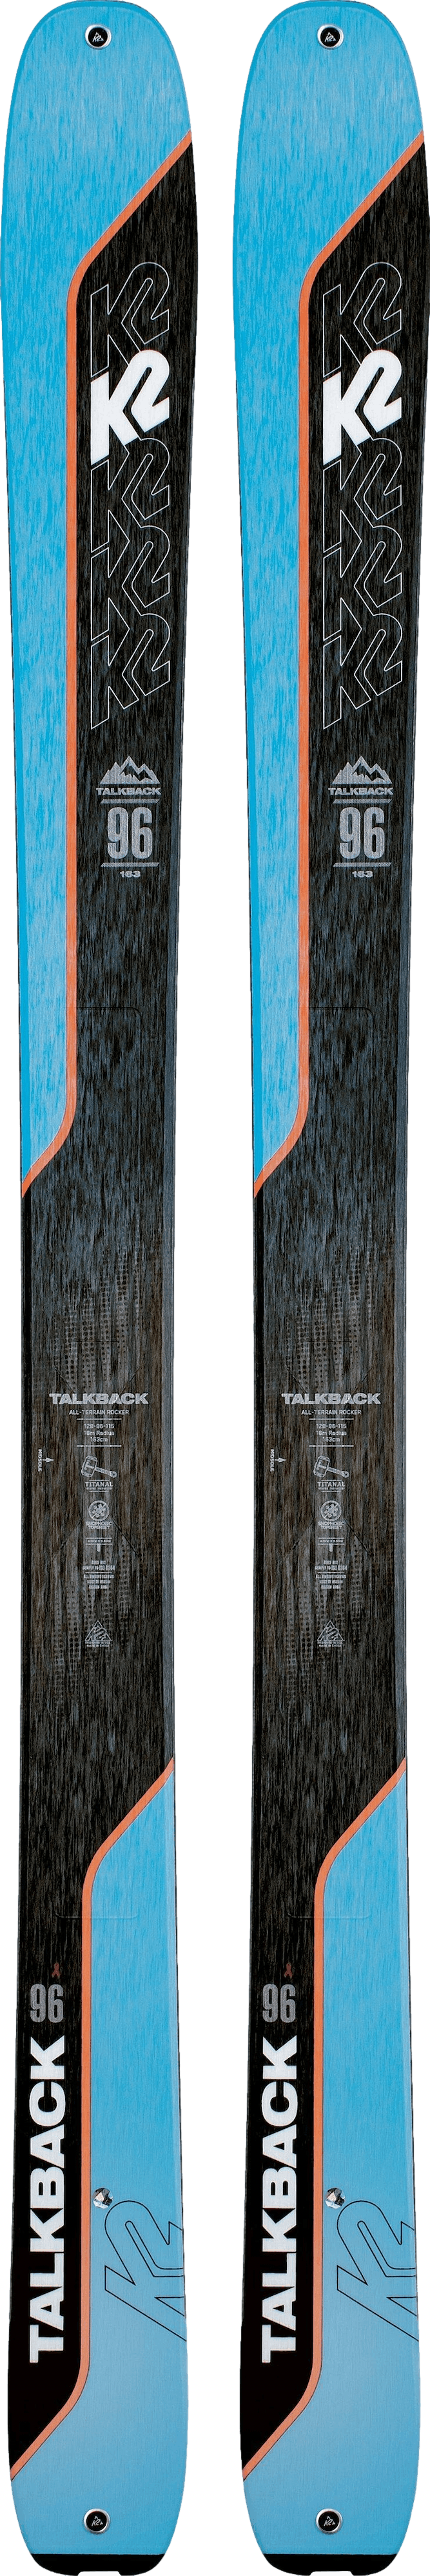 K2 Talkback 96 Skis · Women's · 2022